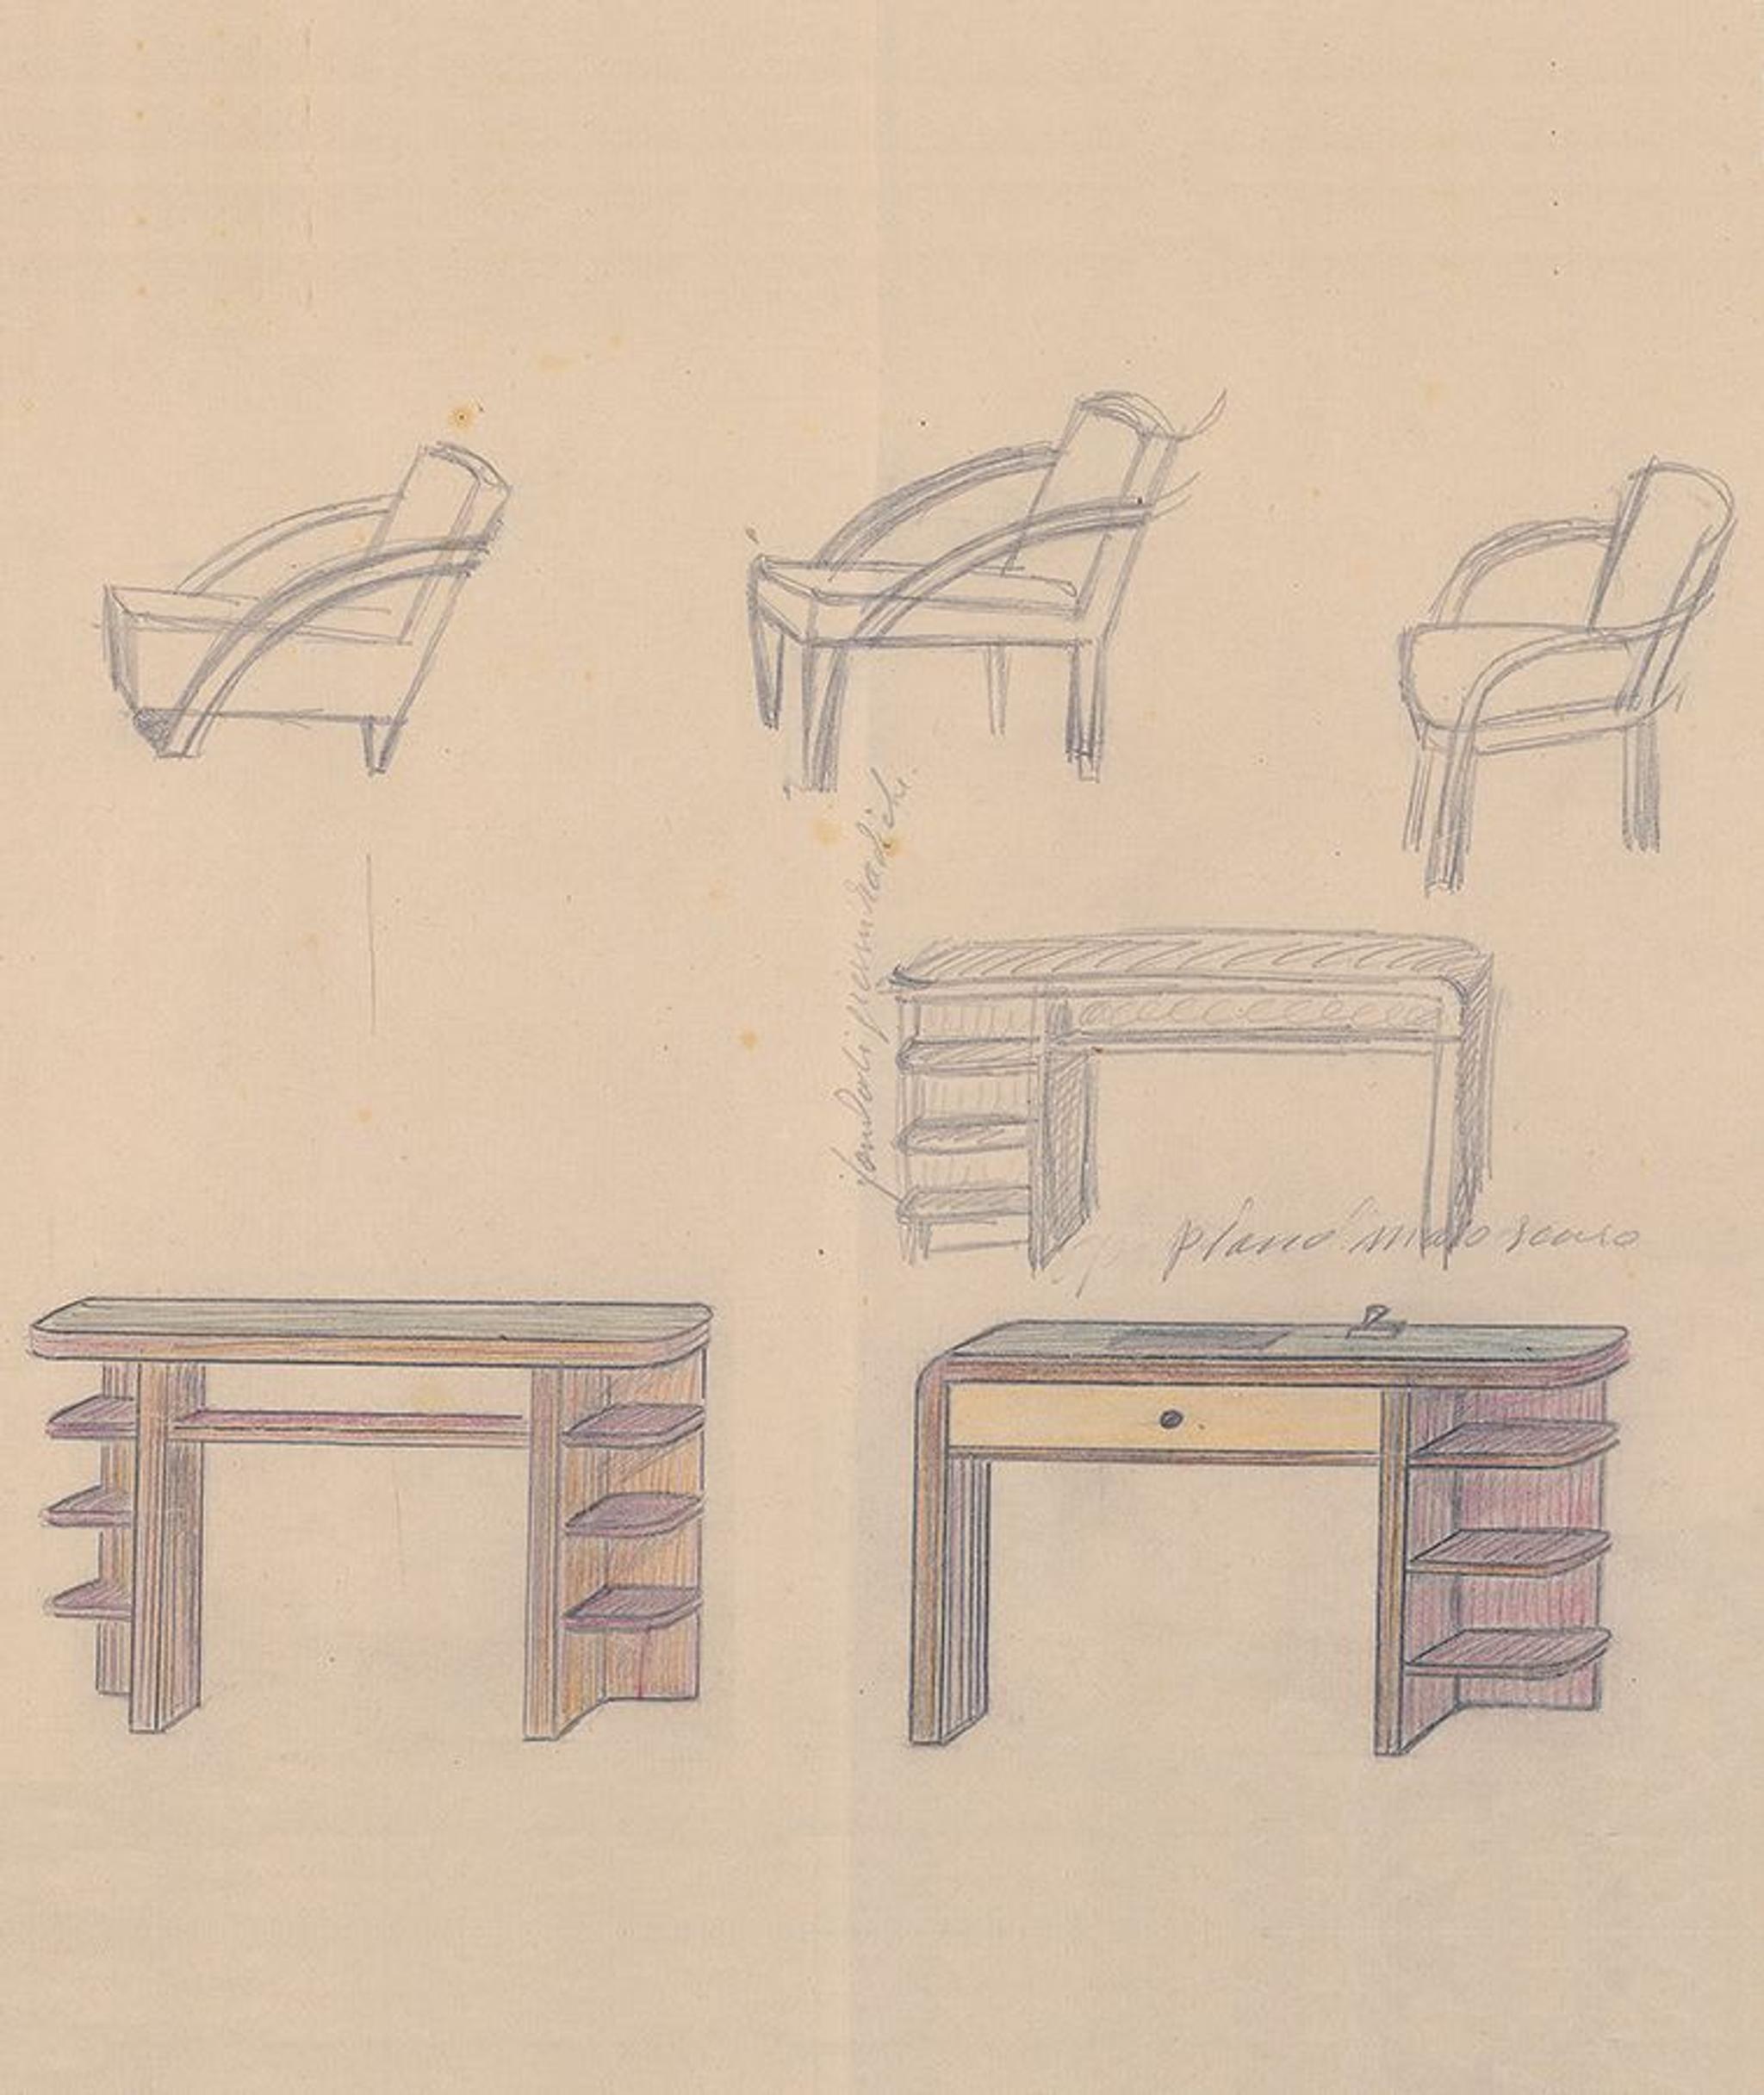 Schizzo di mobili misti di Antonio Berdondini